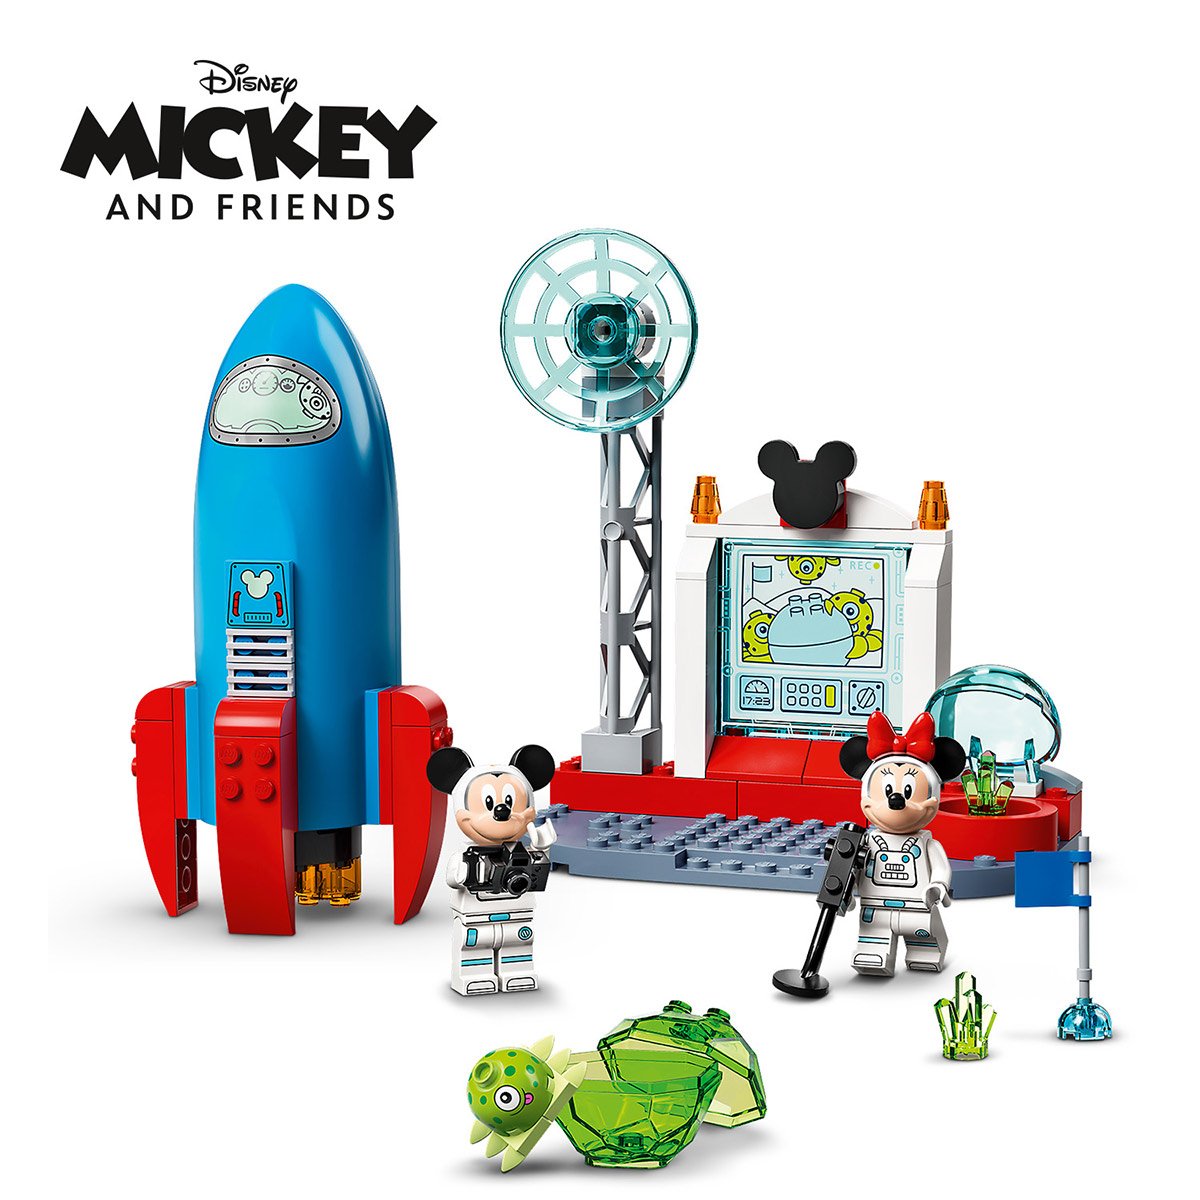 Robot Mickey interactif et éducatif - La Grande Récré